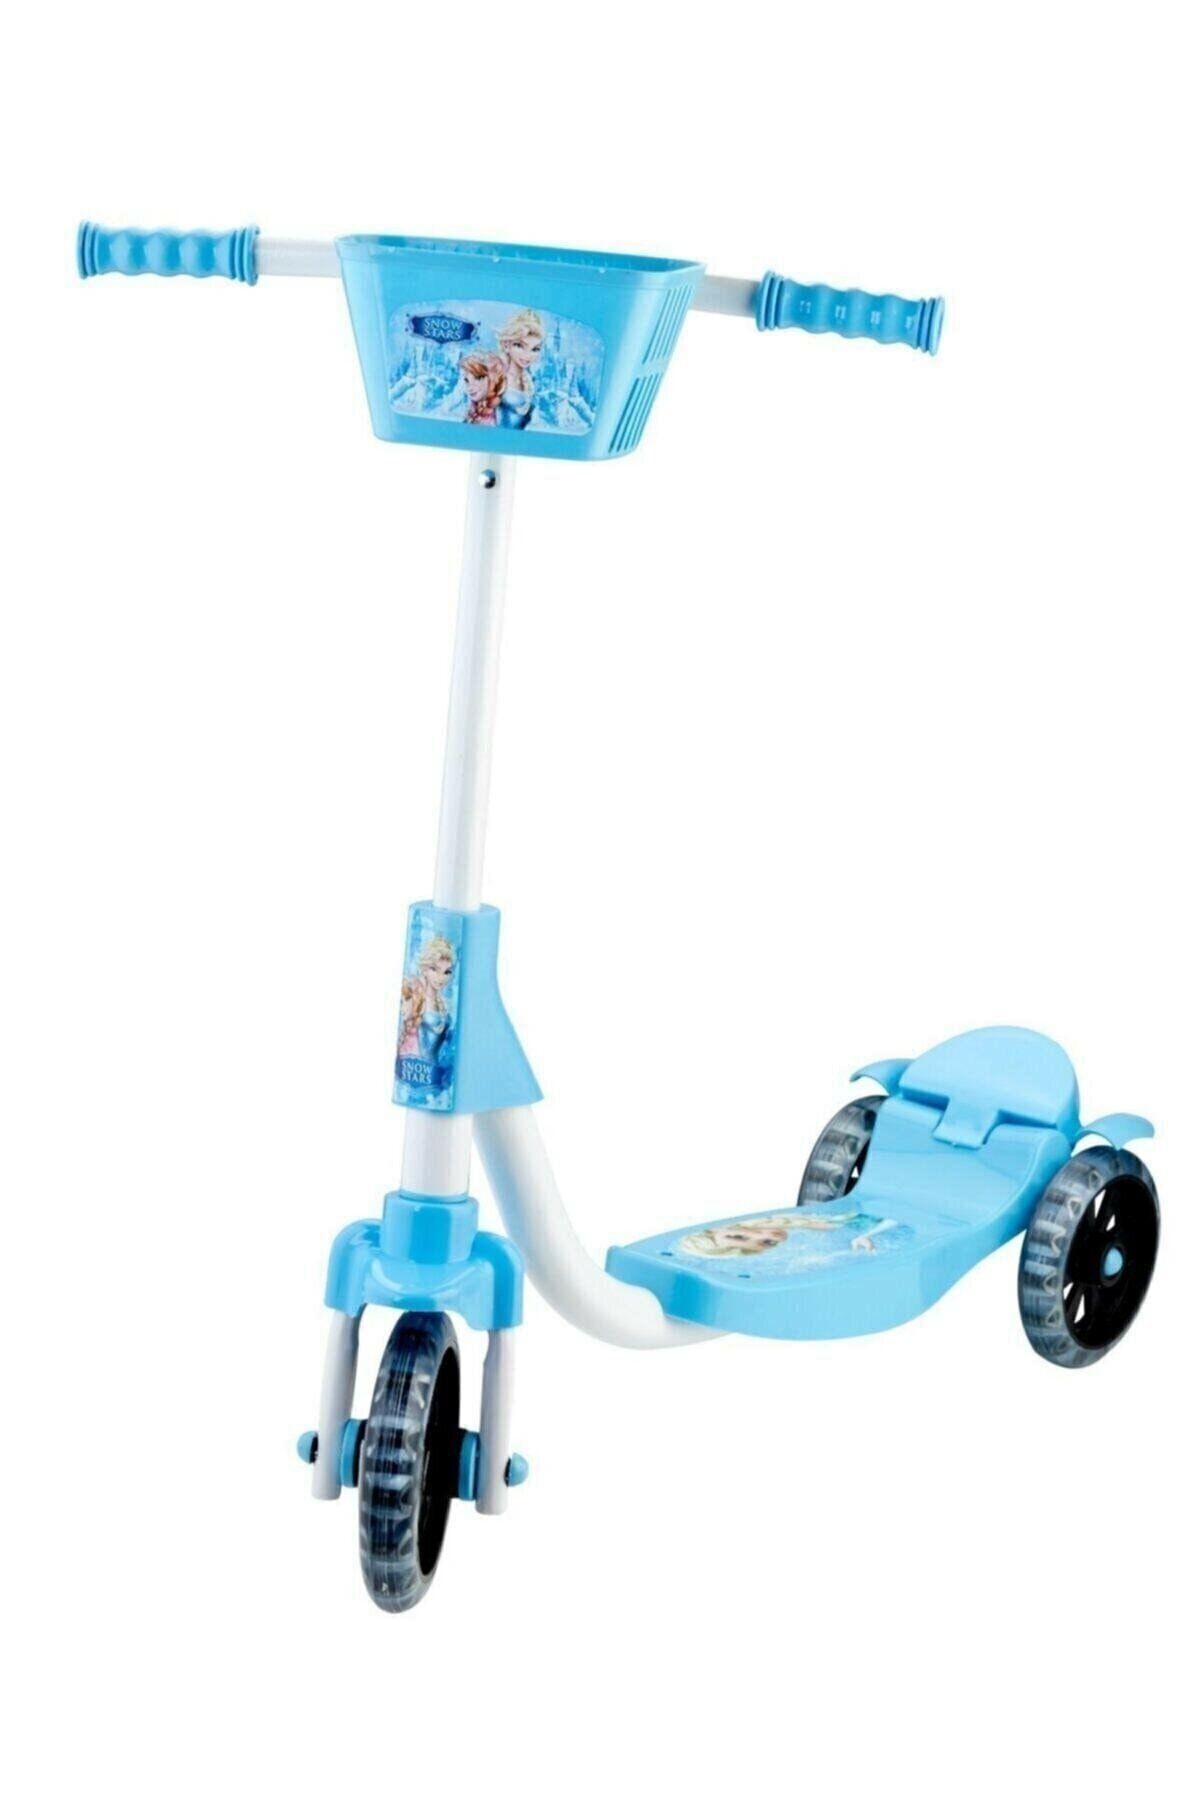 Beren Oyuncak Frozen Elsa Karlar Kraliçesi 3 Tekerlekli Frenli Çocuk Scooter (55 kg Taşıma Kapasiteli)